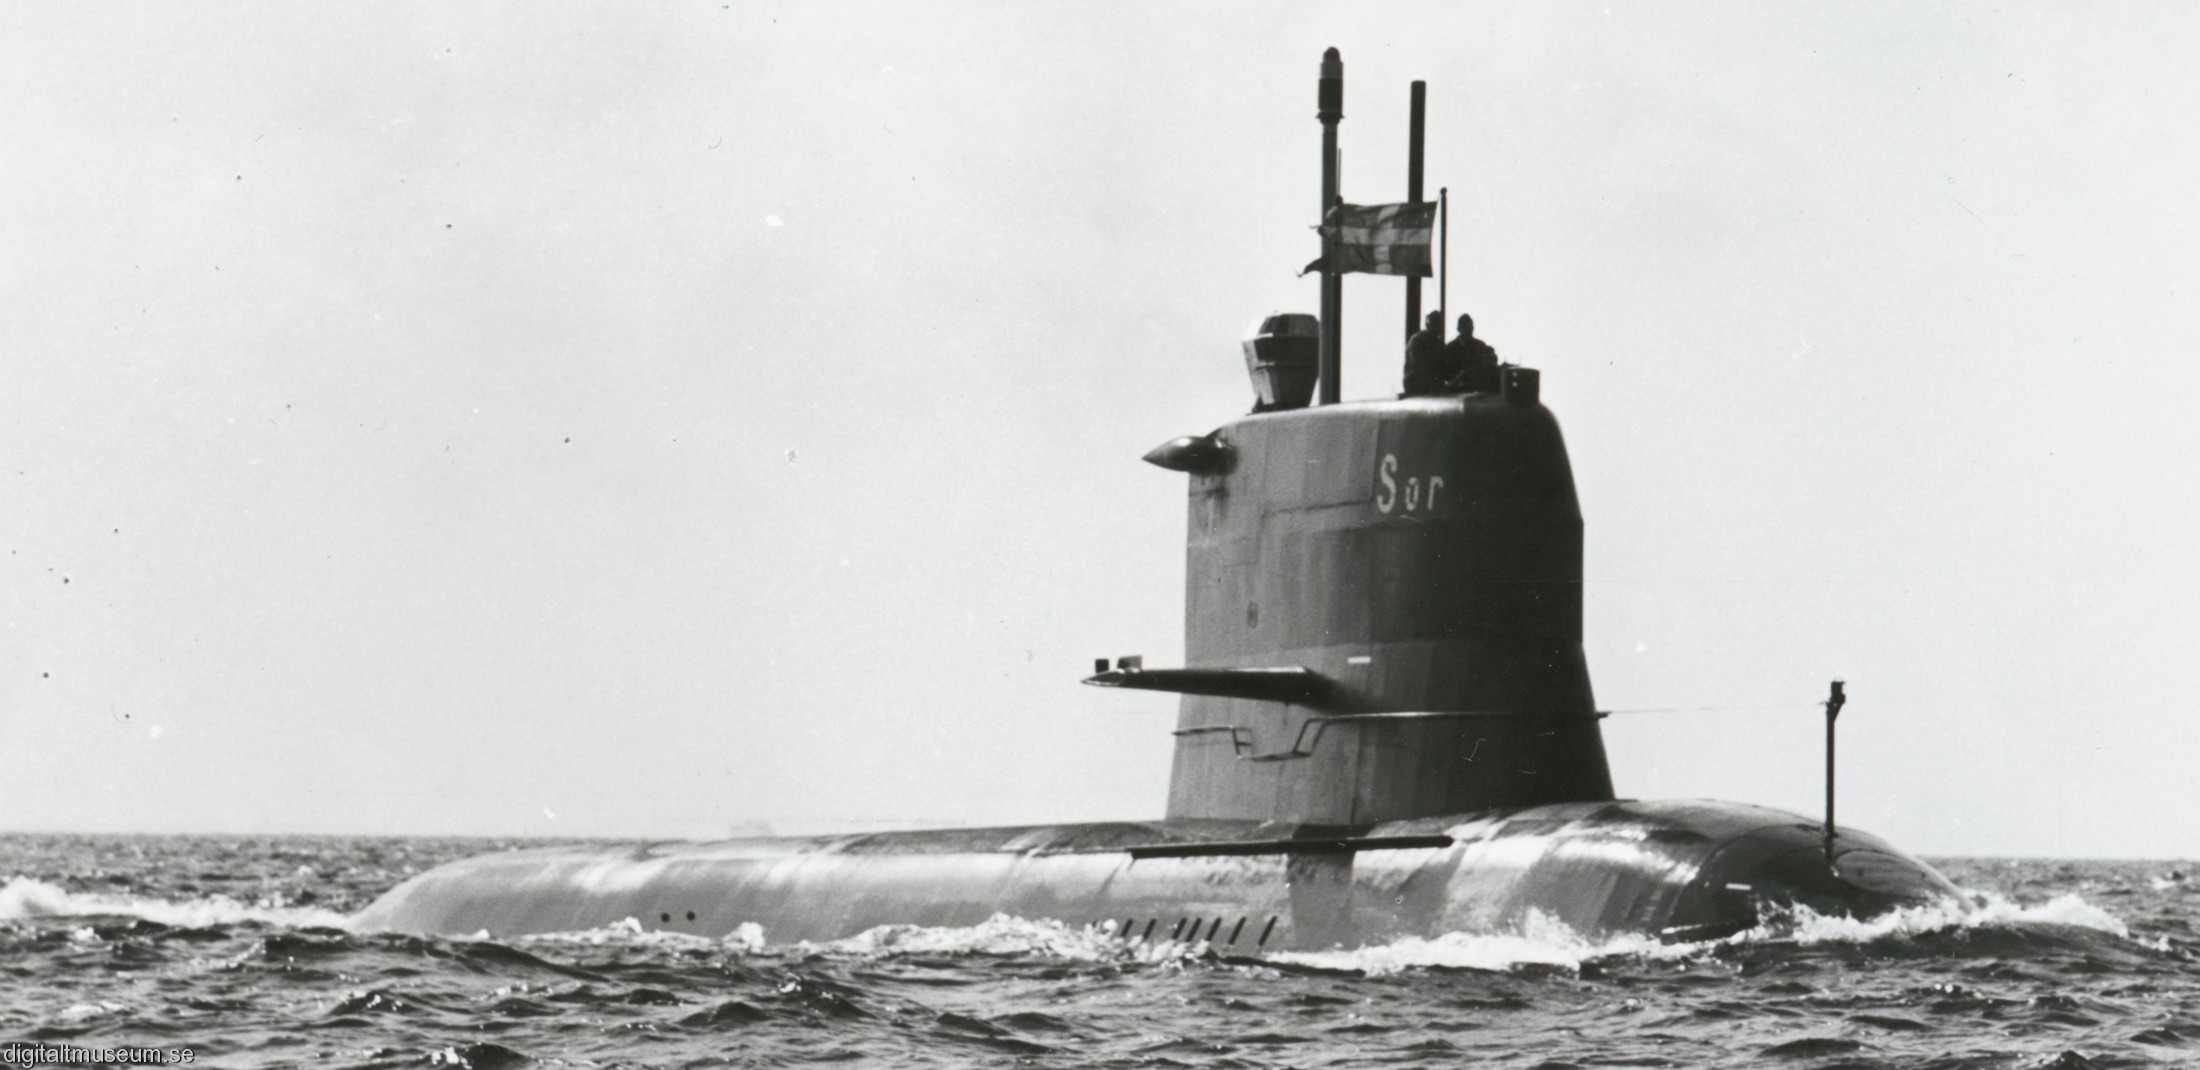 hswms hms sjöormen sjo a11 class submarine ssk swedish navy svenska marinen försvarsmakten 02